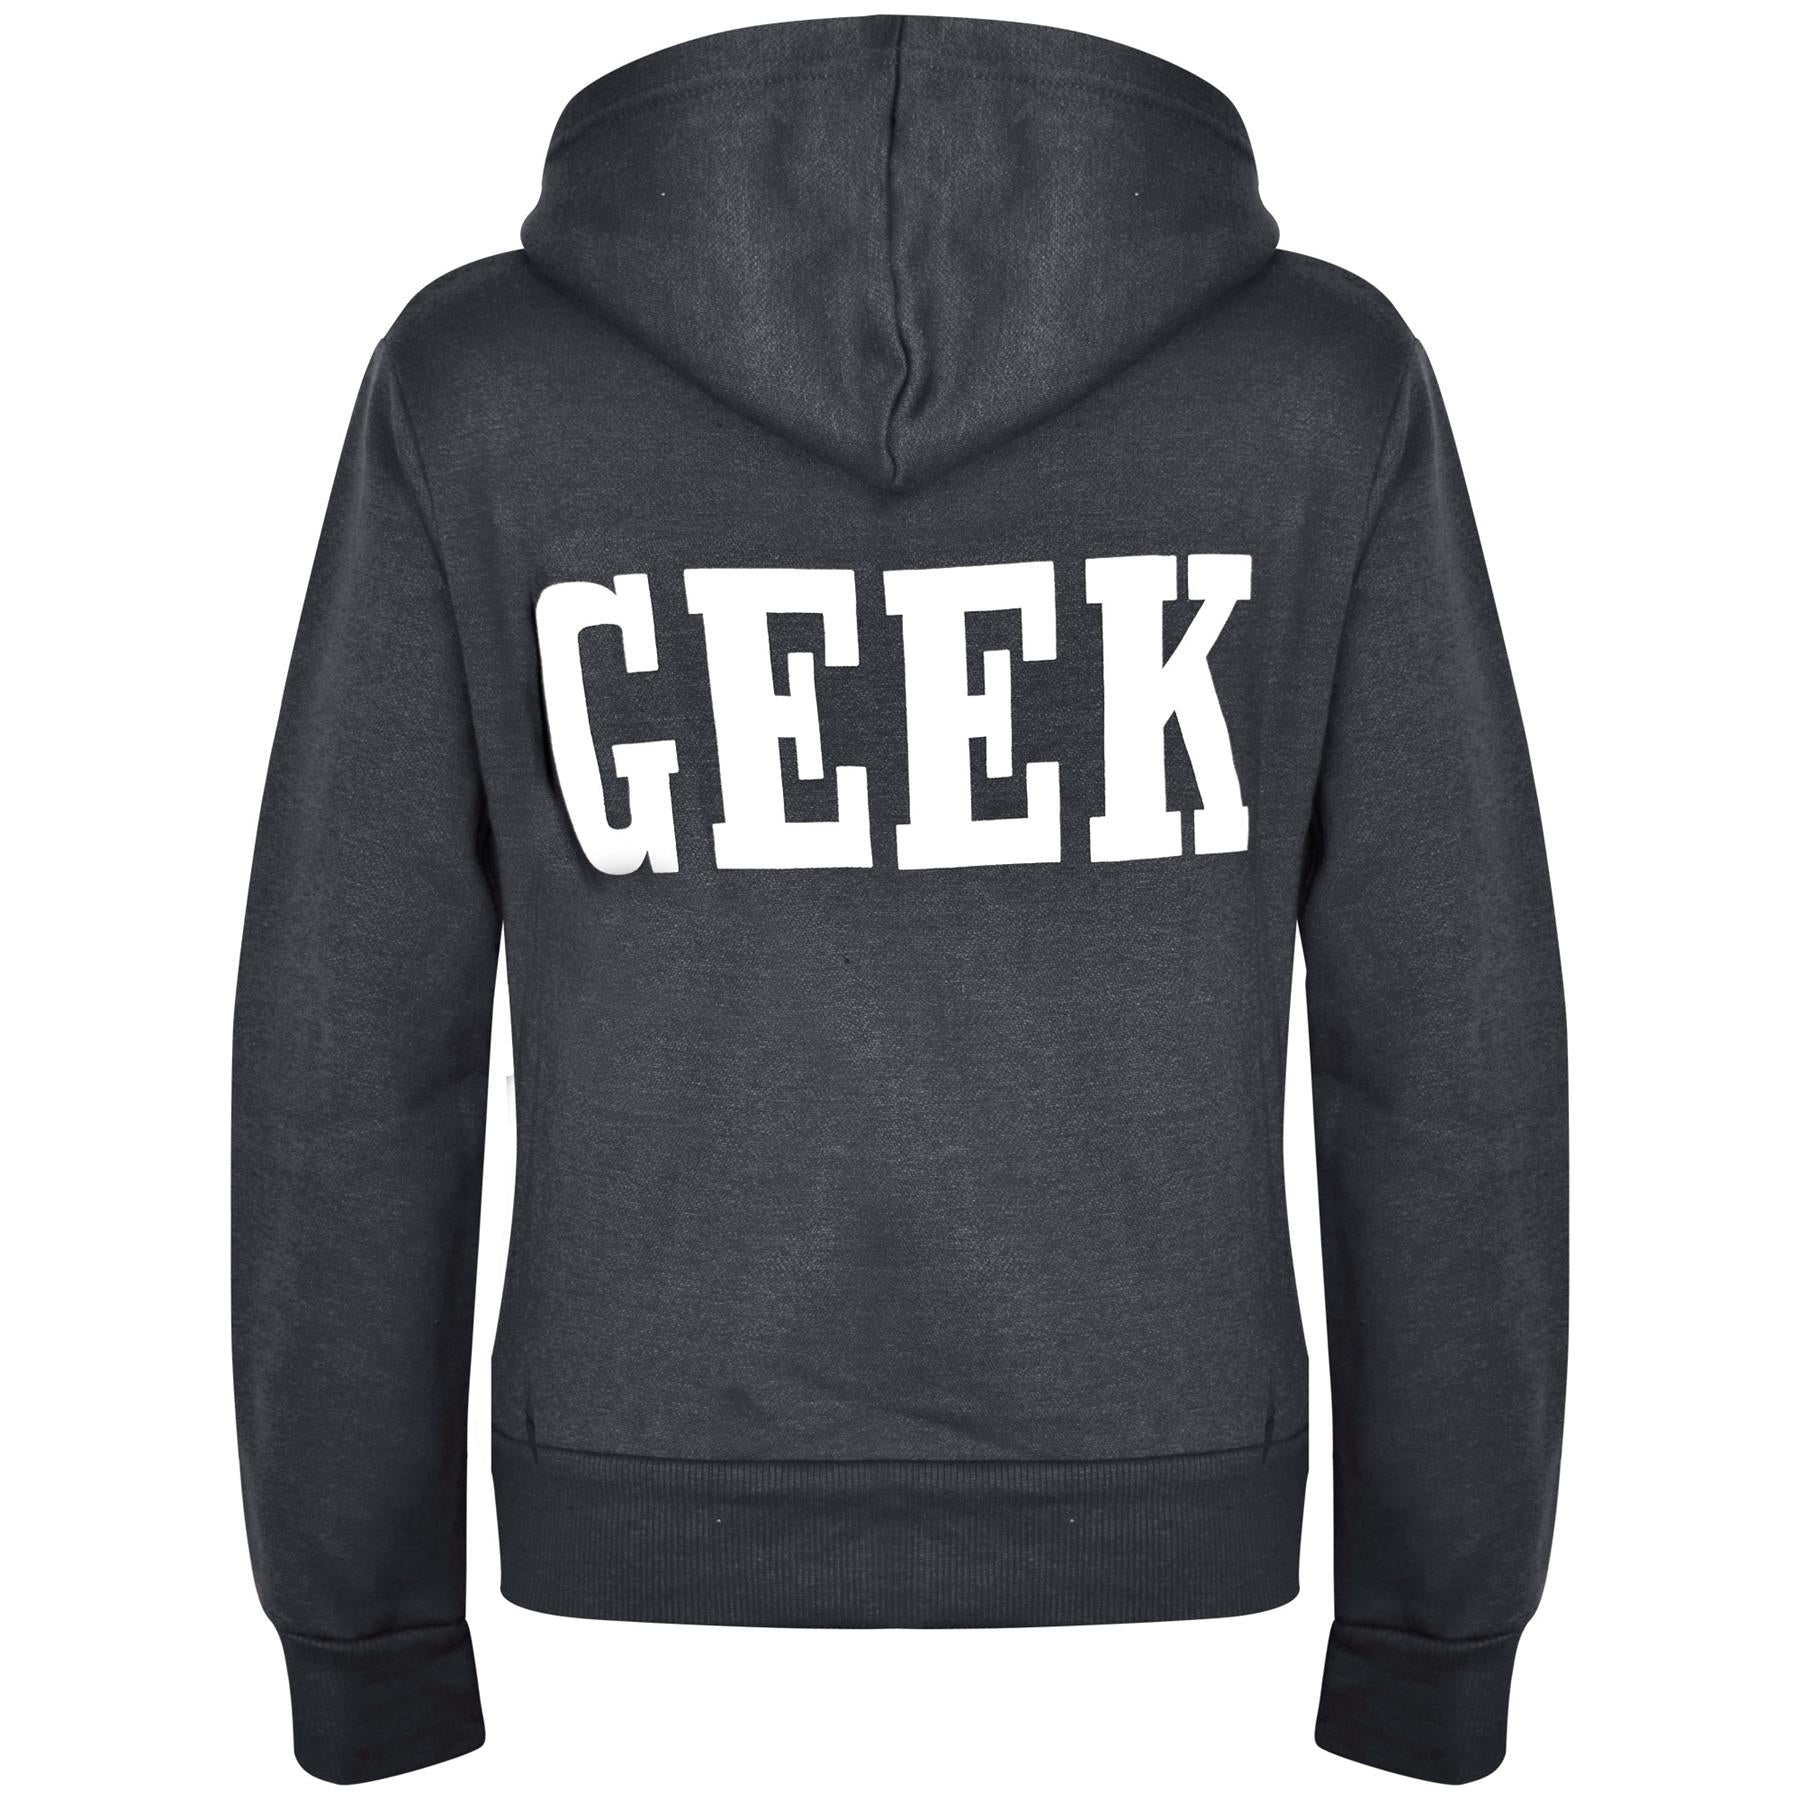 Kids Girls Boys Geek Print Fleece Hooded Zipper